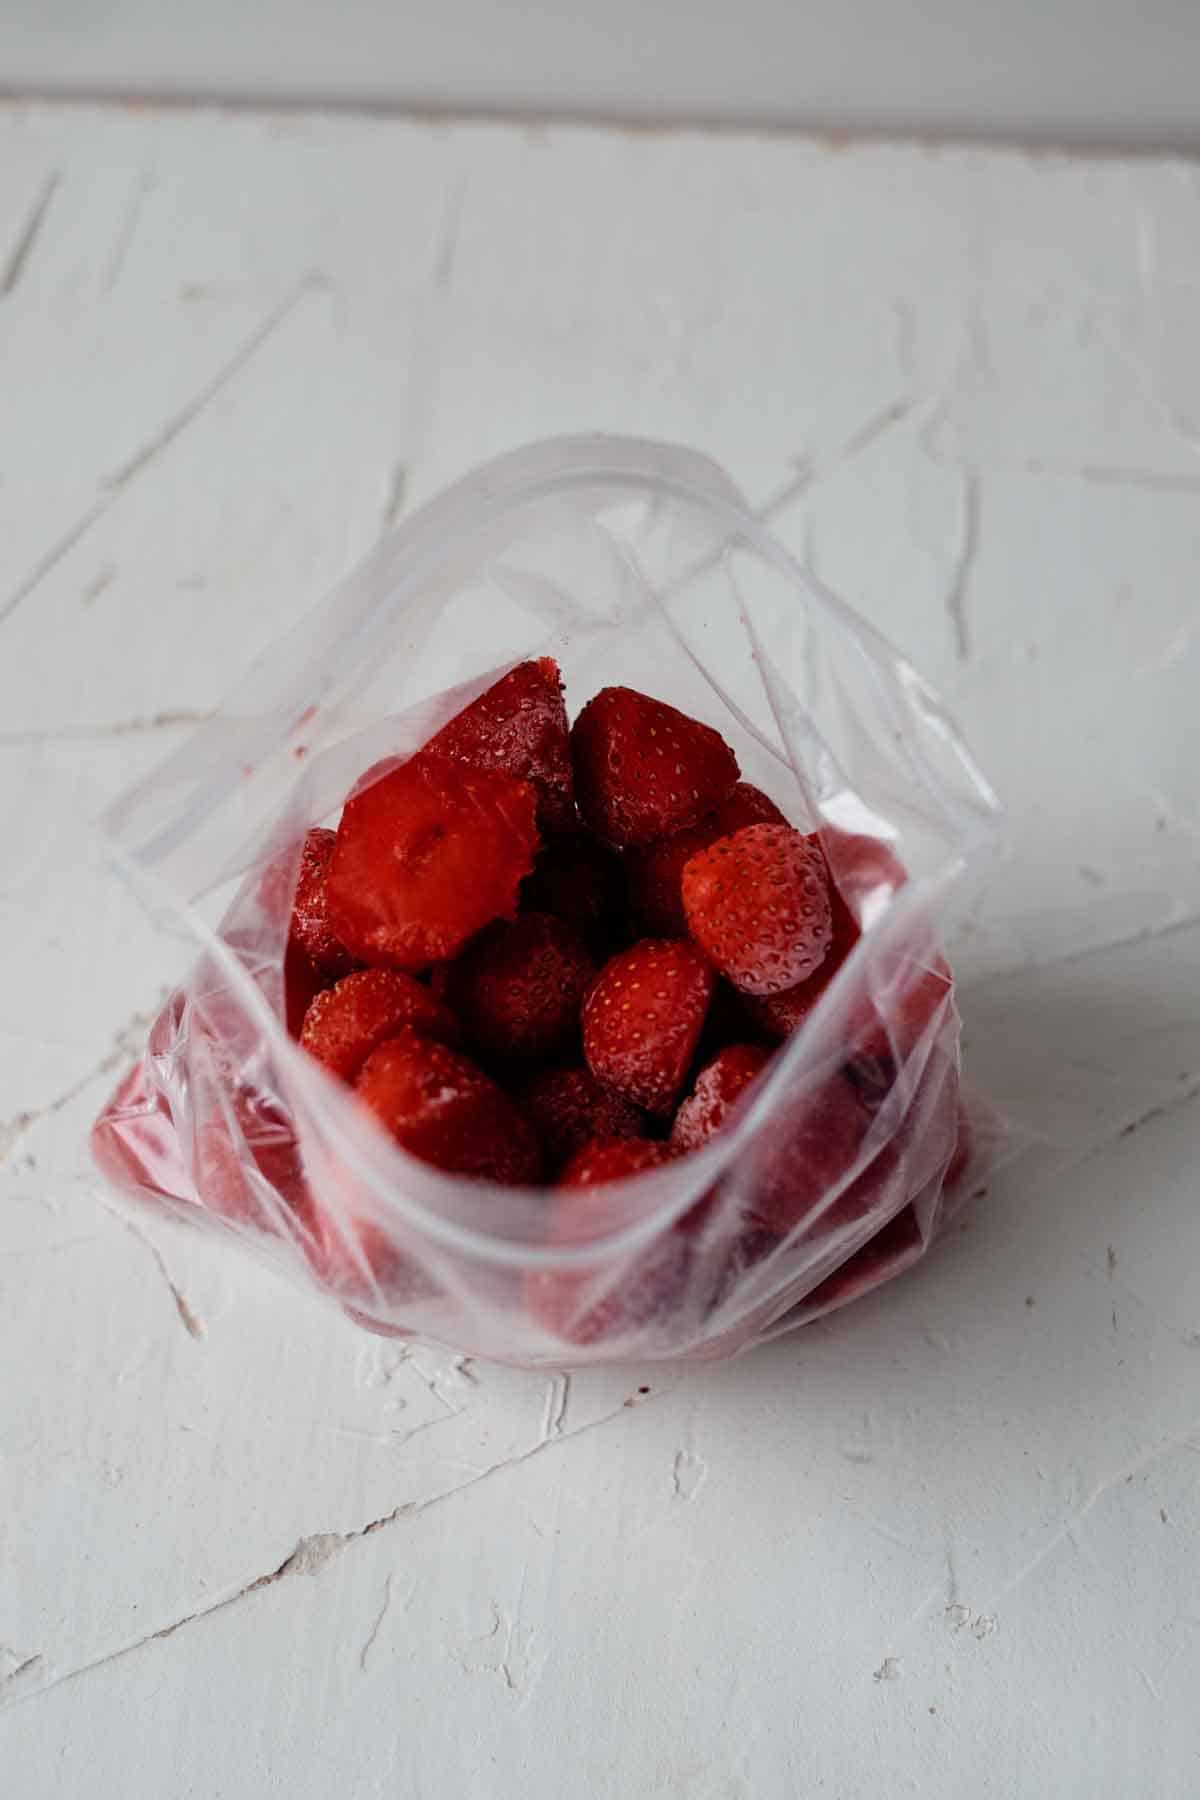 Frozen berries in plastic freezer bag.